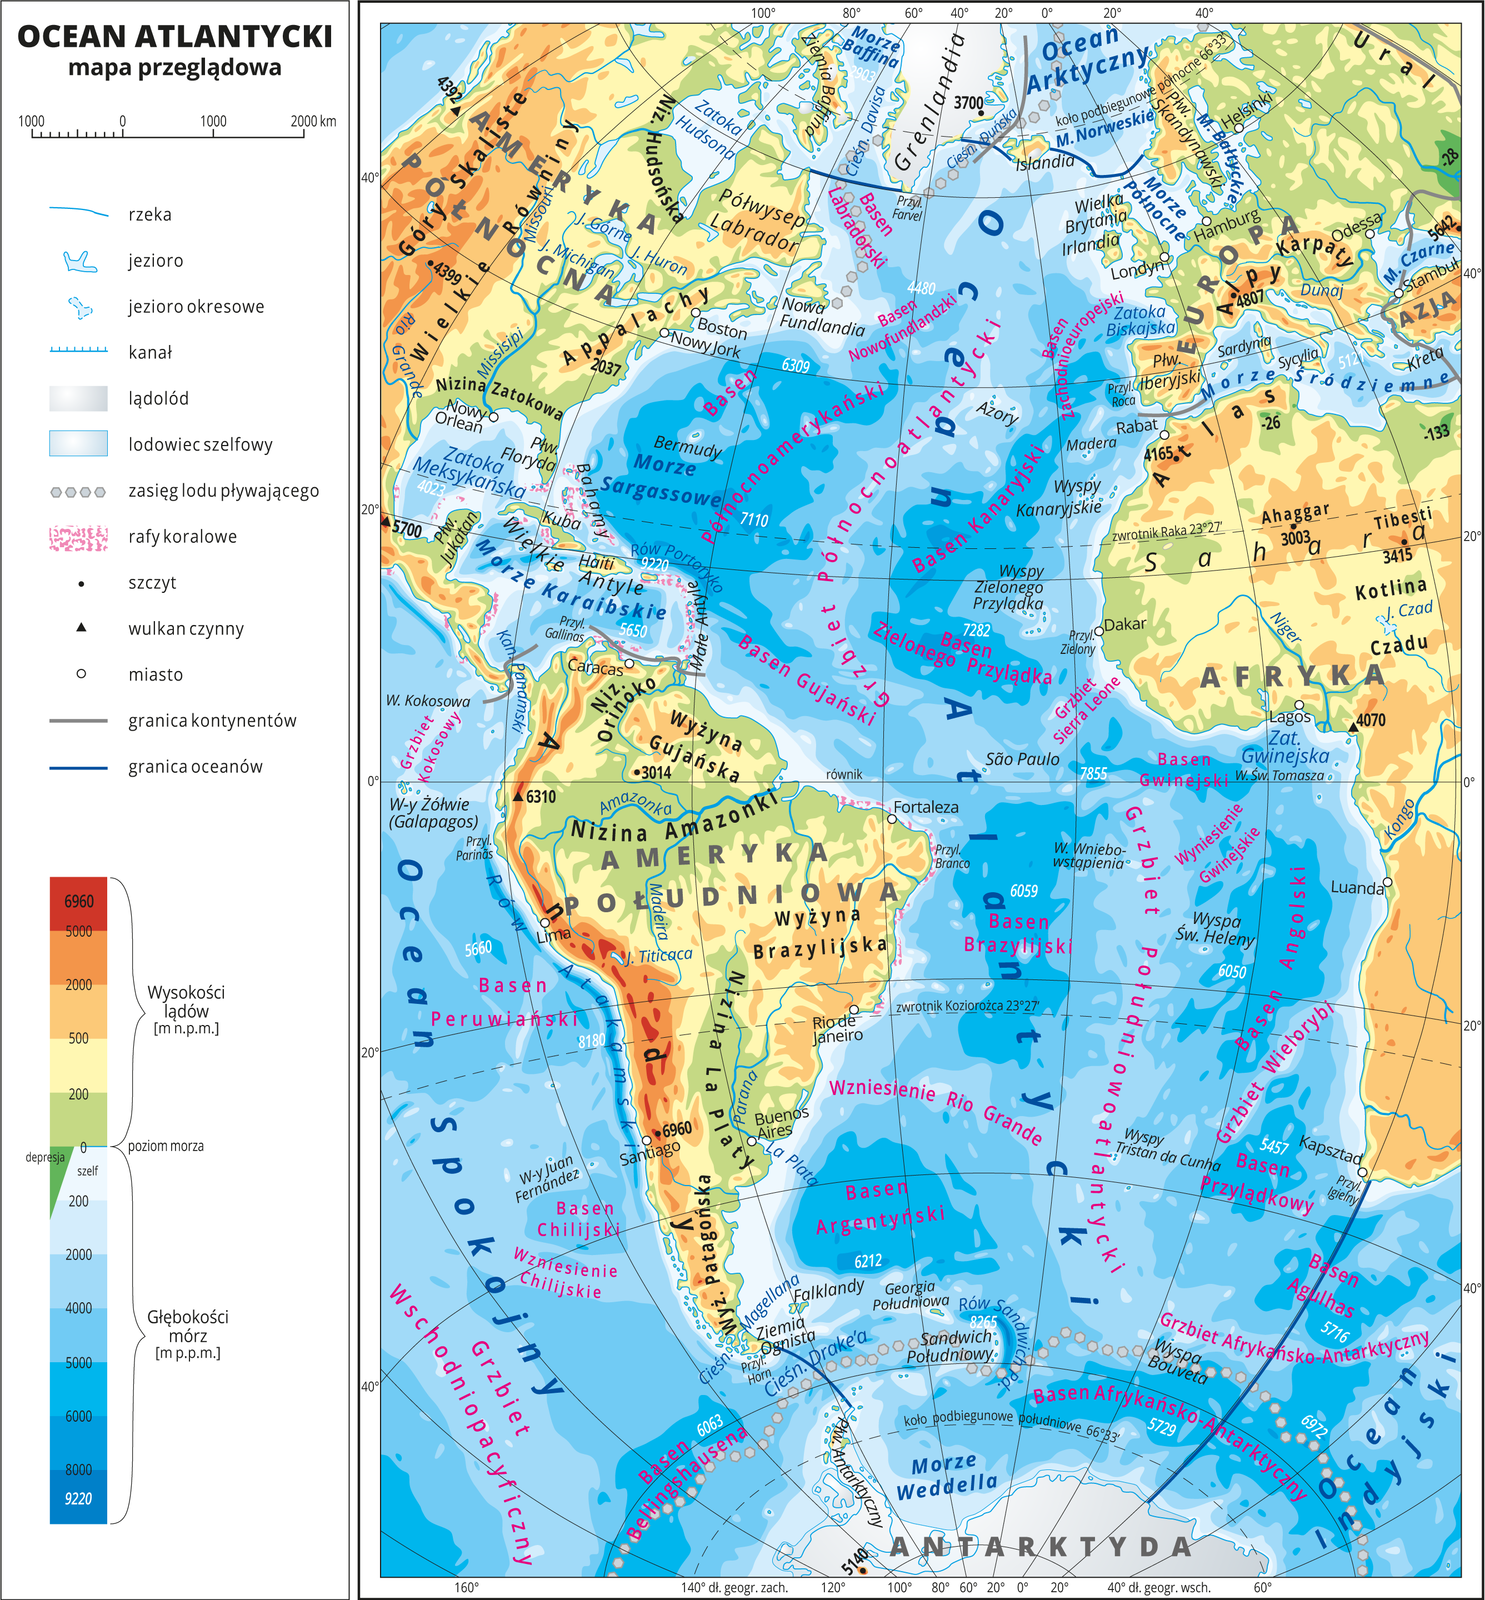 Ilustracja przedstawia mapę przeglądową Oceanu Atlantyckiego. W obrębie lądów występują obszary w kolorze zielonym, żółtym, pomarańczowym i czerwonym. Morza zaznaczono sześcioma odcieniami koloru niebieskiego i opisano głębokości. Ciemniejszy kolor oznacza większą głębokość. W obrębie wód przeprowadzono granice między oceanami. Na mapie opisano nazwy kontynentów, wysp, głównych pasm górskich, morza i zatoki. Oznaczono i opisano największe miasta. Mapa pokryta jest równoleżnikami i południkami. Dookoła mapy w białej ramce opisano współrzędne geograficzne co dwadzieścia stopni. W legendzie umieszczono i opisano znaki użyte na mapie.